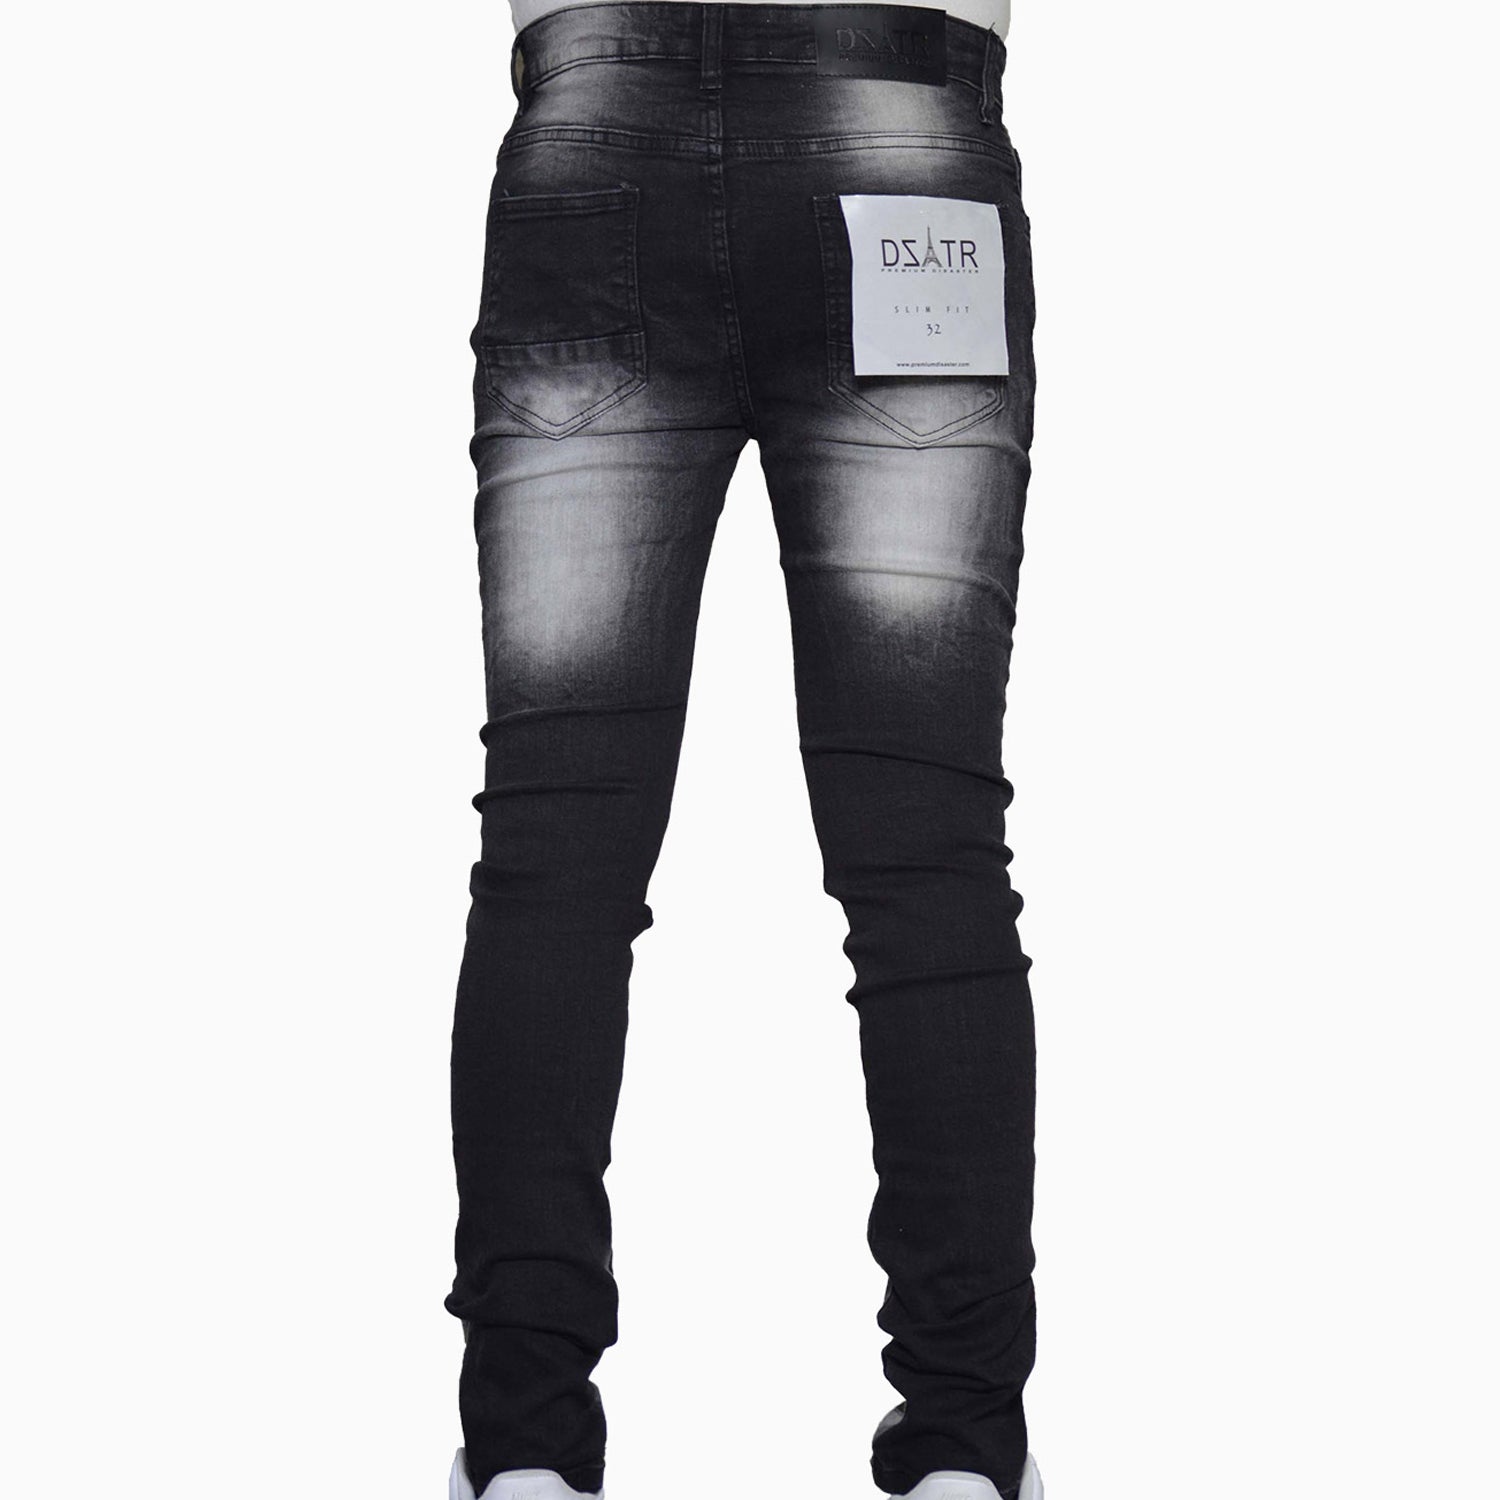 premium-disaster-mens-chevron-jeans-denim-skinny-pant-dztr-207